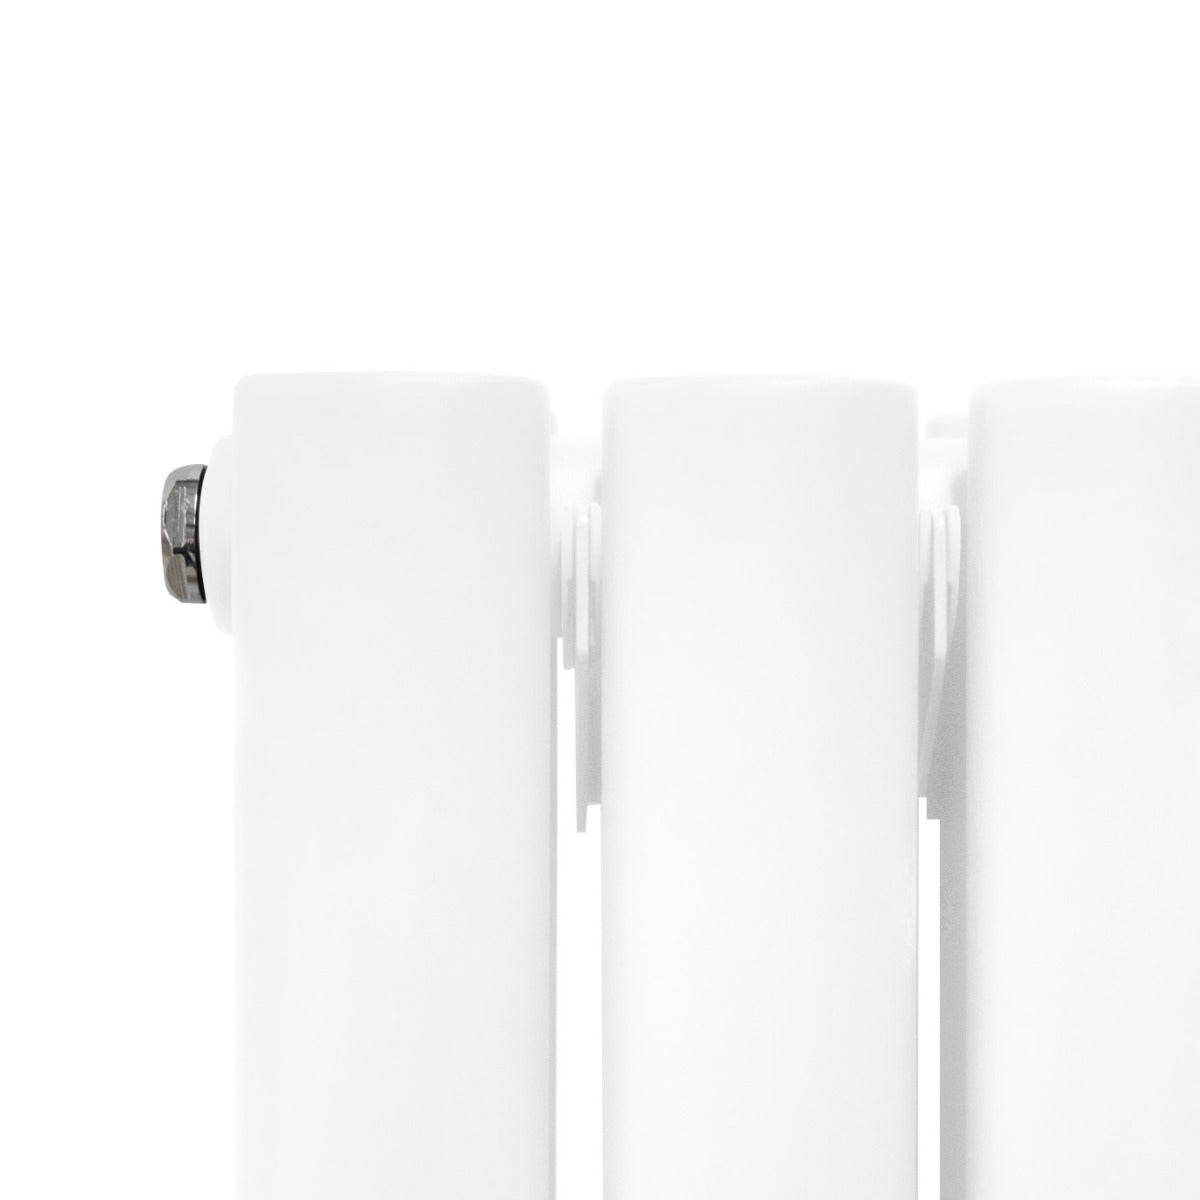 Radiateur à Colonne Ovale avec Miroir & Valves - 1800mm x 500mm – Blanc